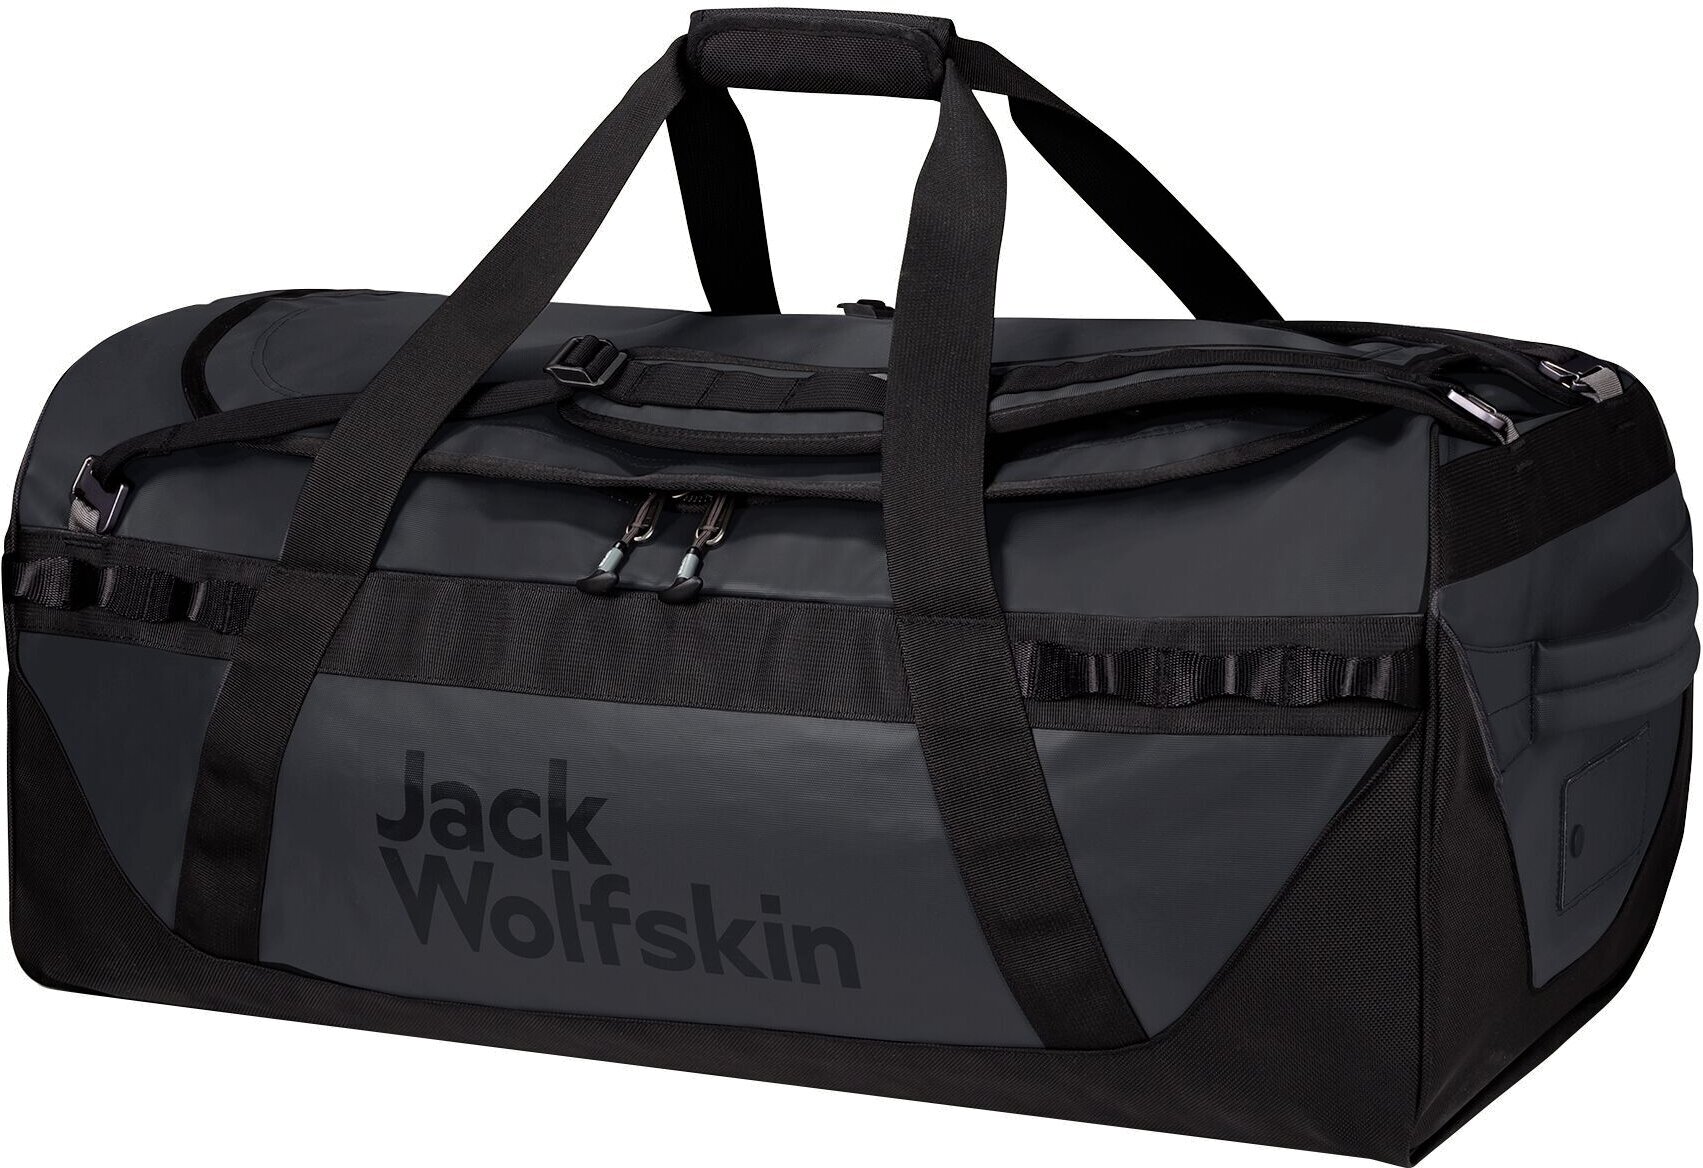 Lifestyle Backpack / Bag Jack Wolfskin Expedition Trunk 100 Black 100 L Backpack